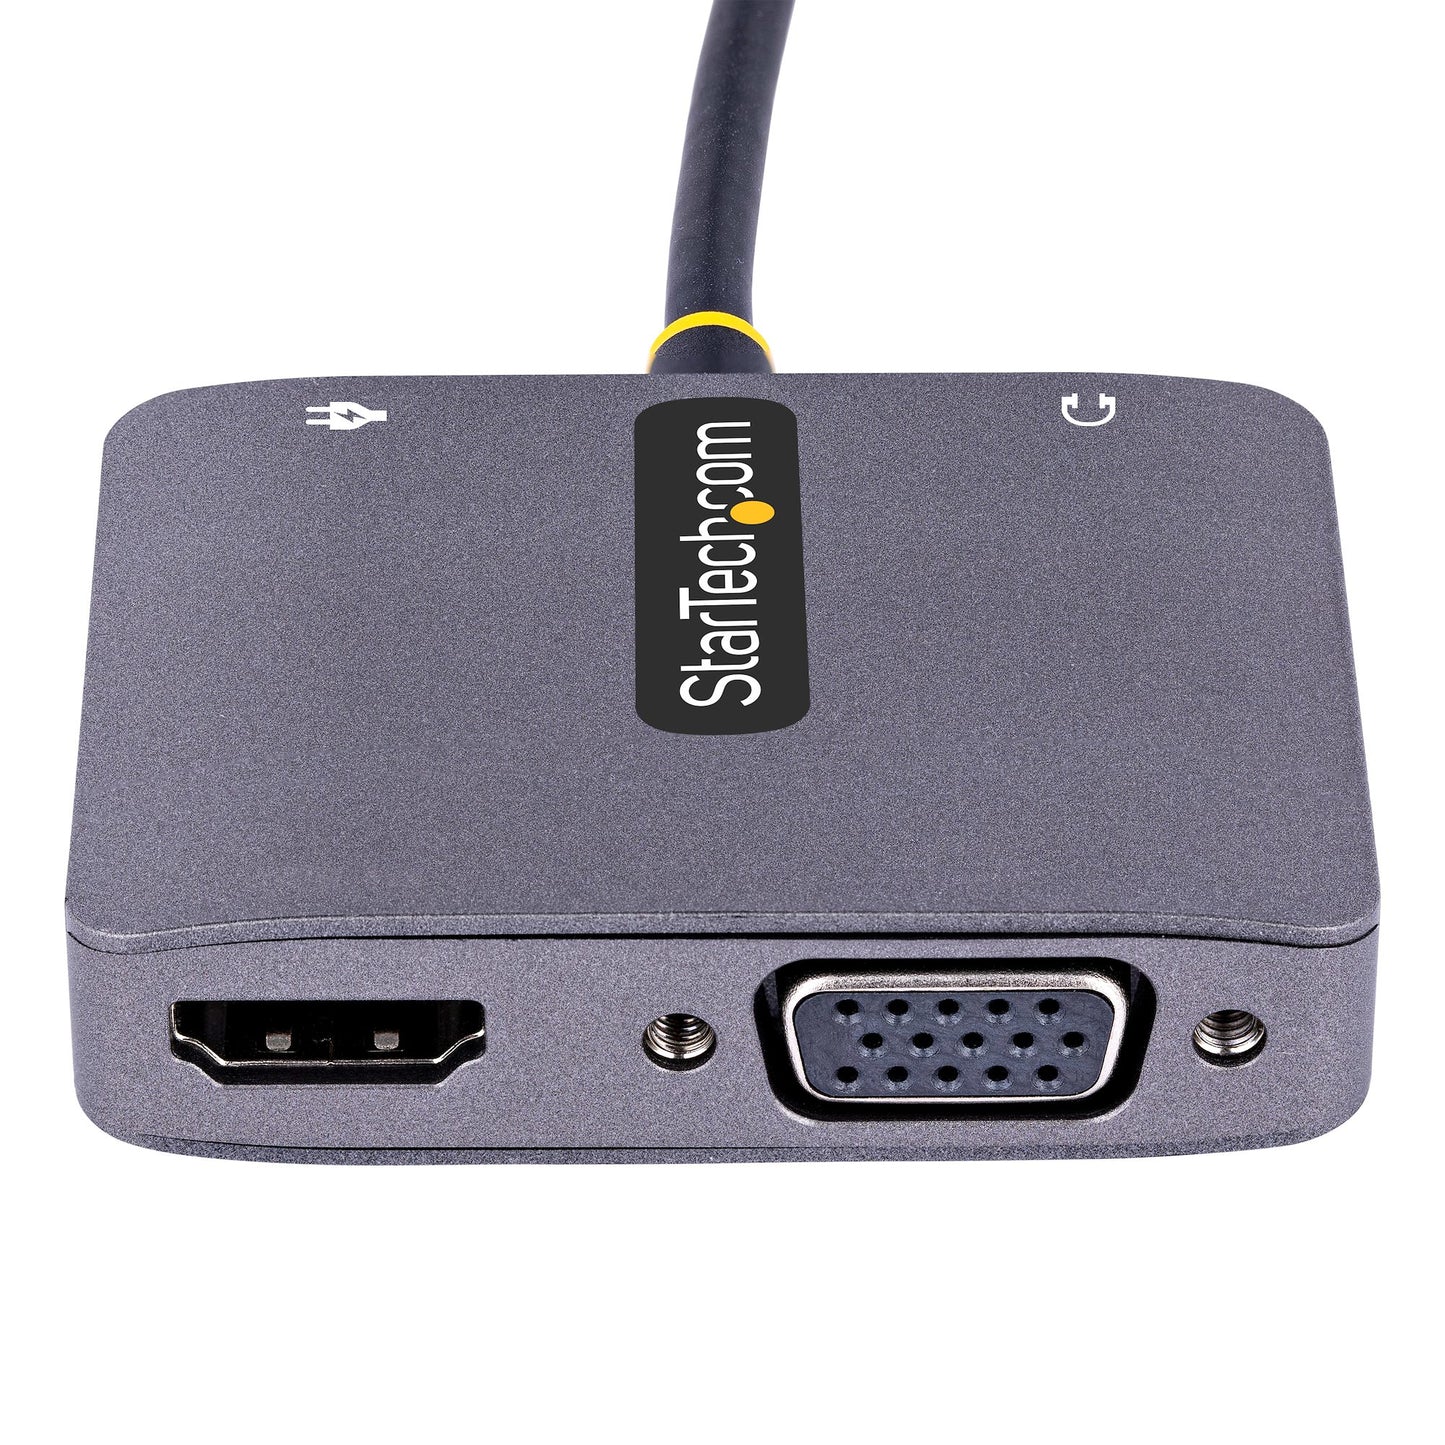 Adaptador de Video StarTech.com 122-USBC-HDMI-4K-VGA, USB C Macho - HDMI/VGA Hembra, Gris